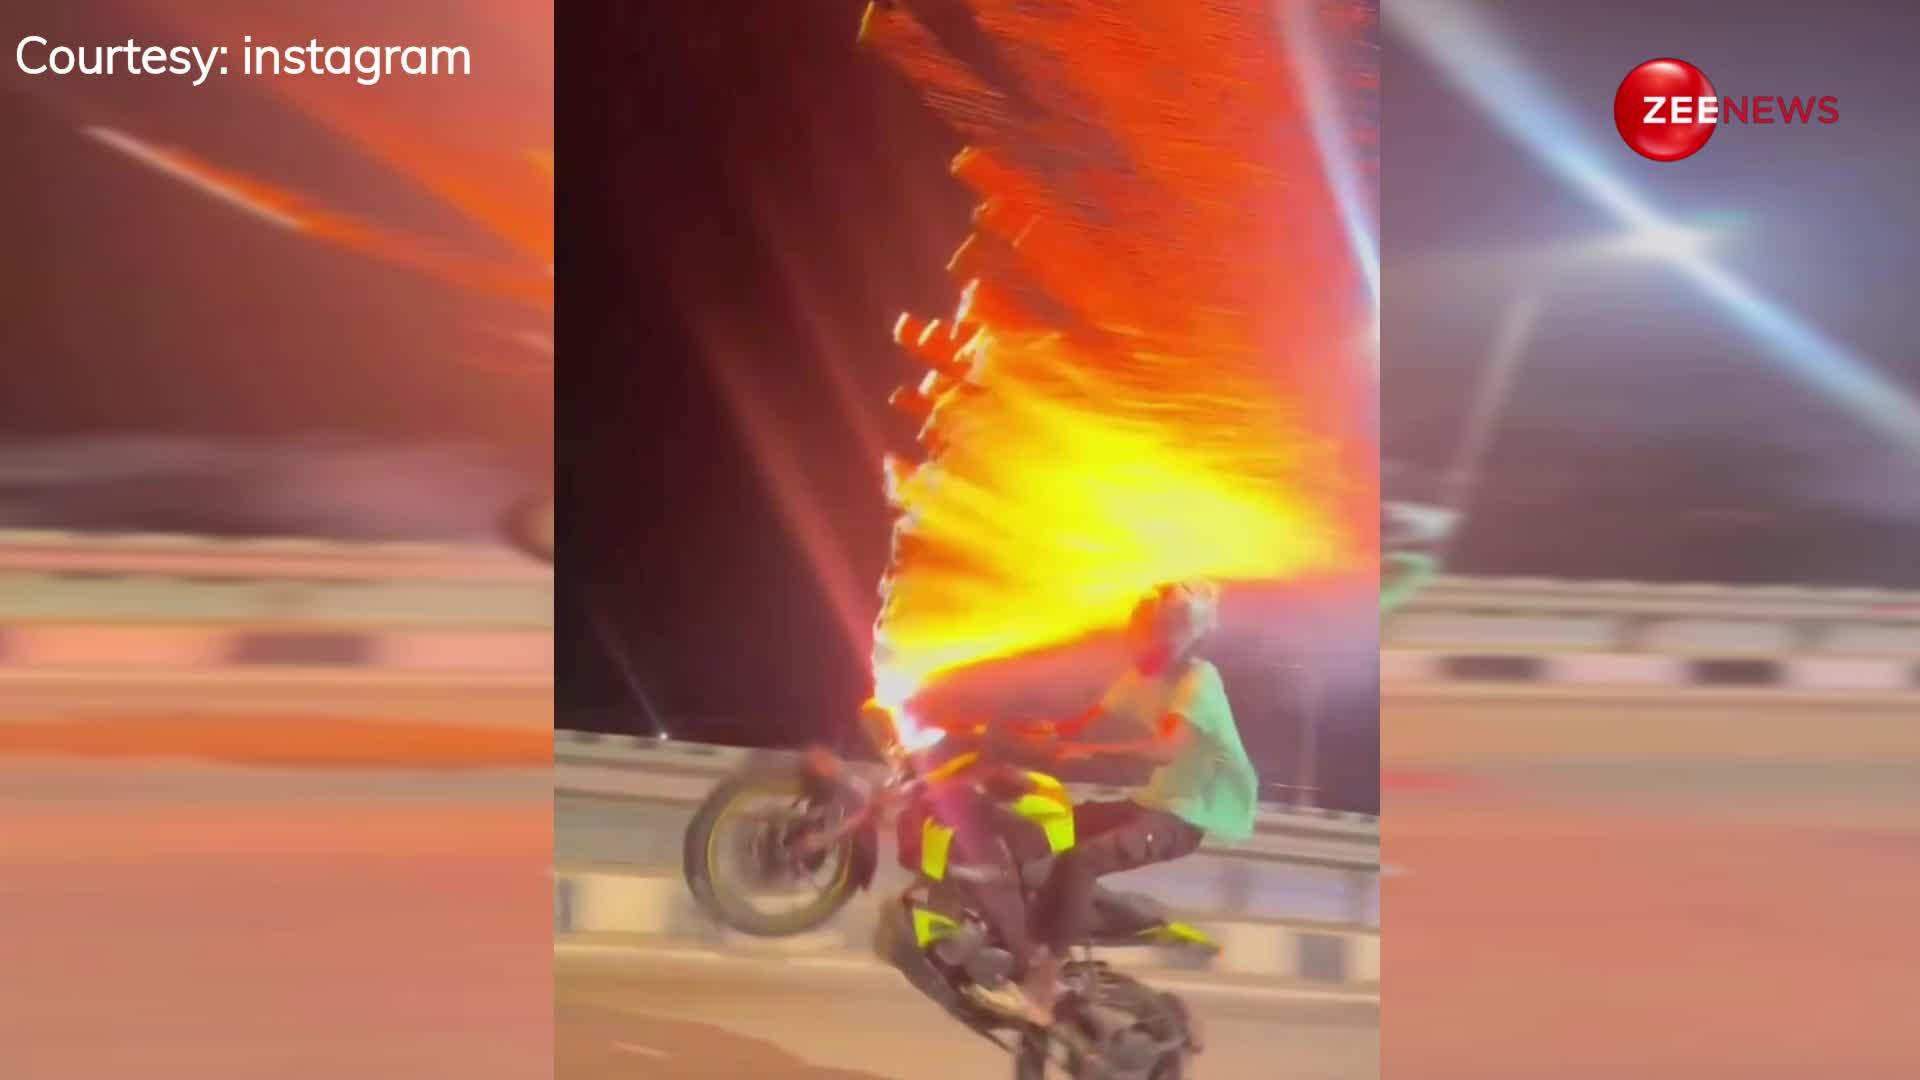 पटाखों के साथ बाइक पर स्टंट कर रहे लड़के का वीडियो इंटरनेट पर हुआ वायरल, लोगों ने कमेंट्स में निकाला अपना गुस्सा